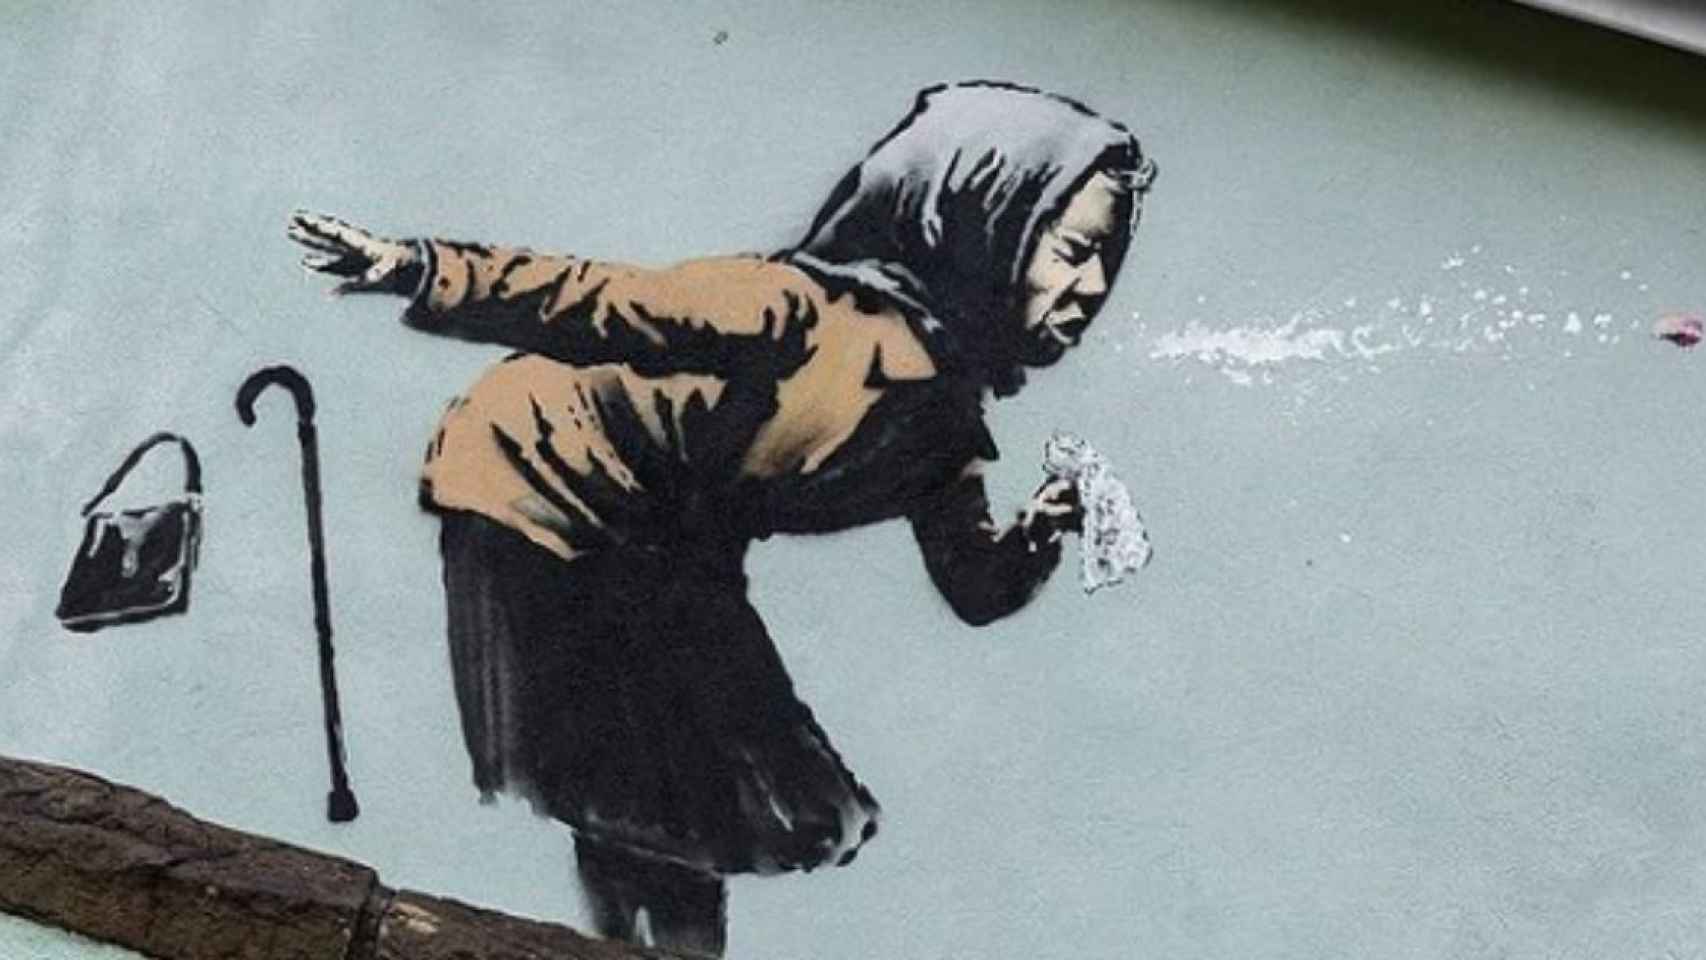 La obra de Banksy protagonizada por una anciana resfriada / BANKSY